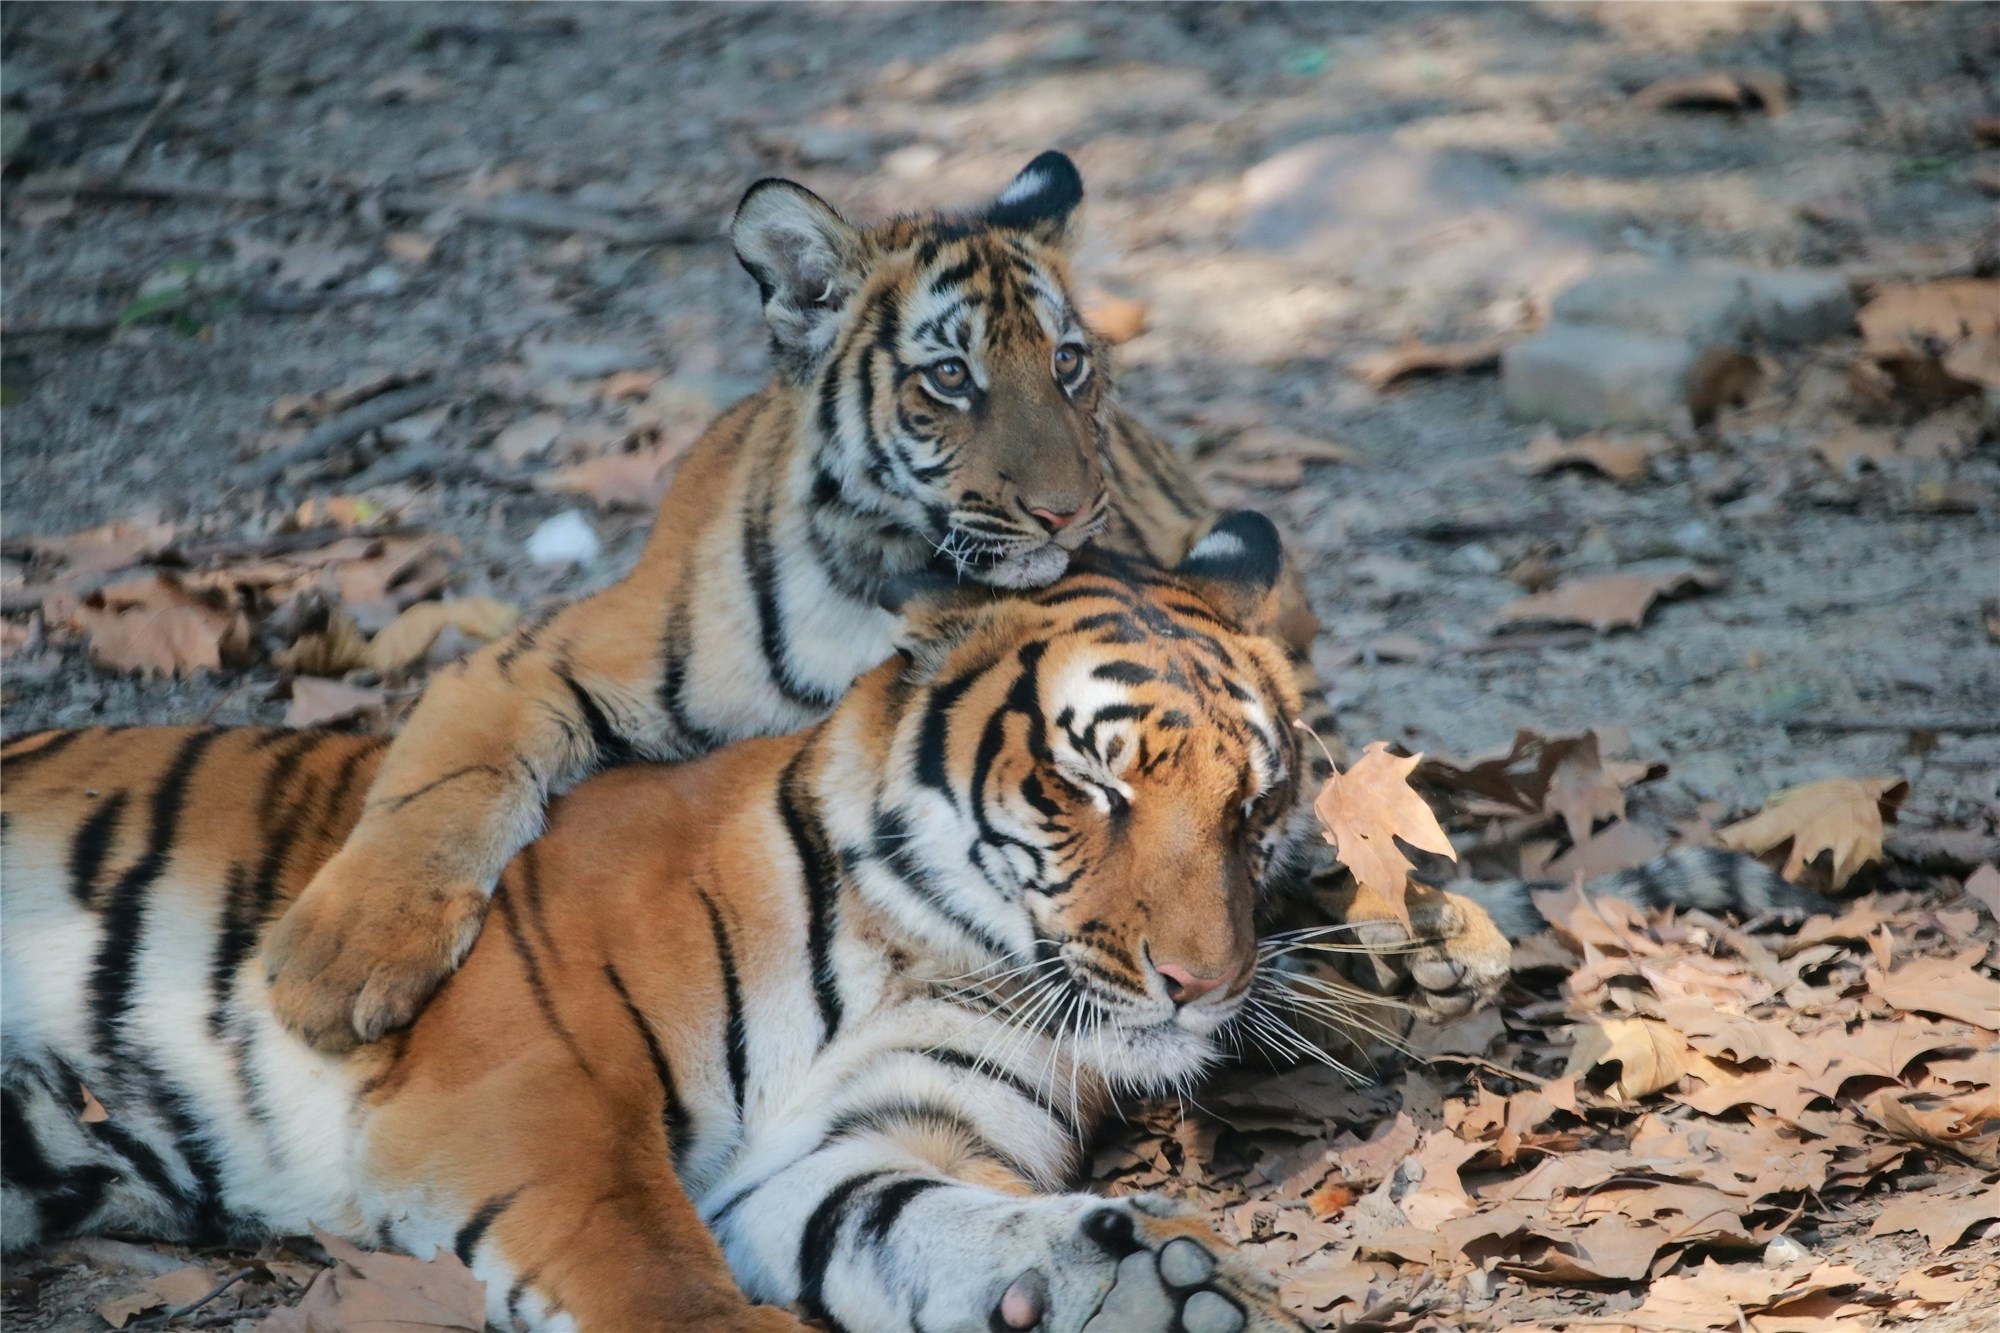 老虎们是上海动物园的大明星,这里生活着华南虎,东北虎,孟加拉虎,三大